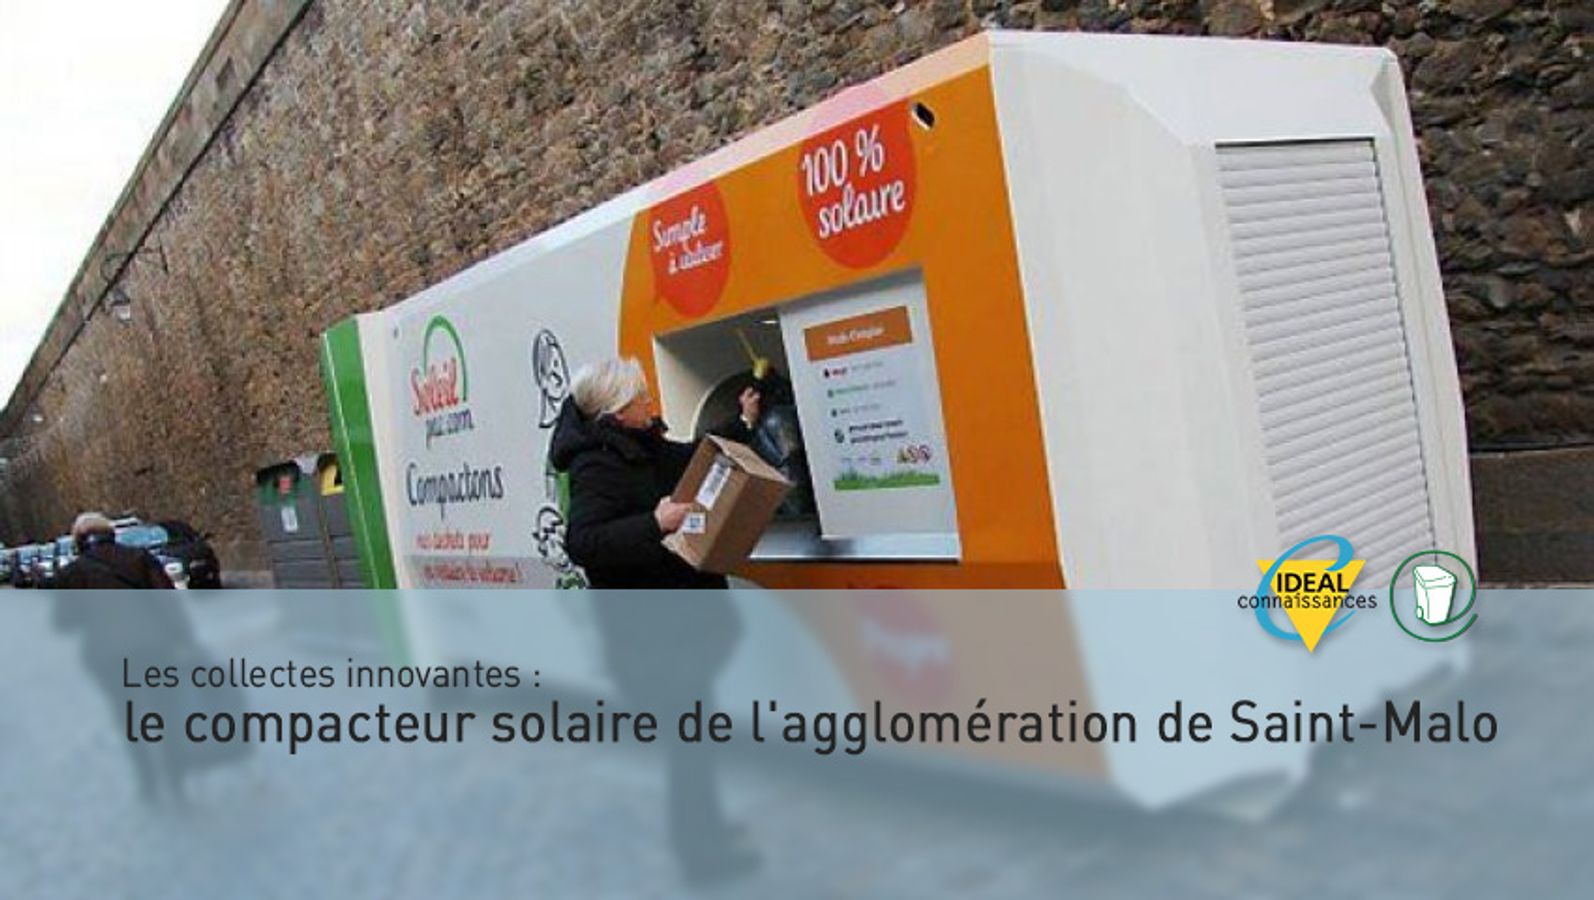 Les collectes innovantes : le compacteur solaire de l'agglomération de Saint-Malo